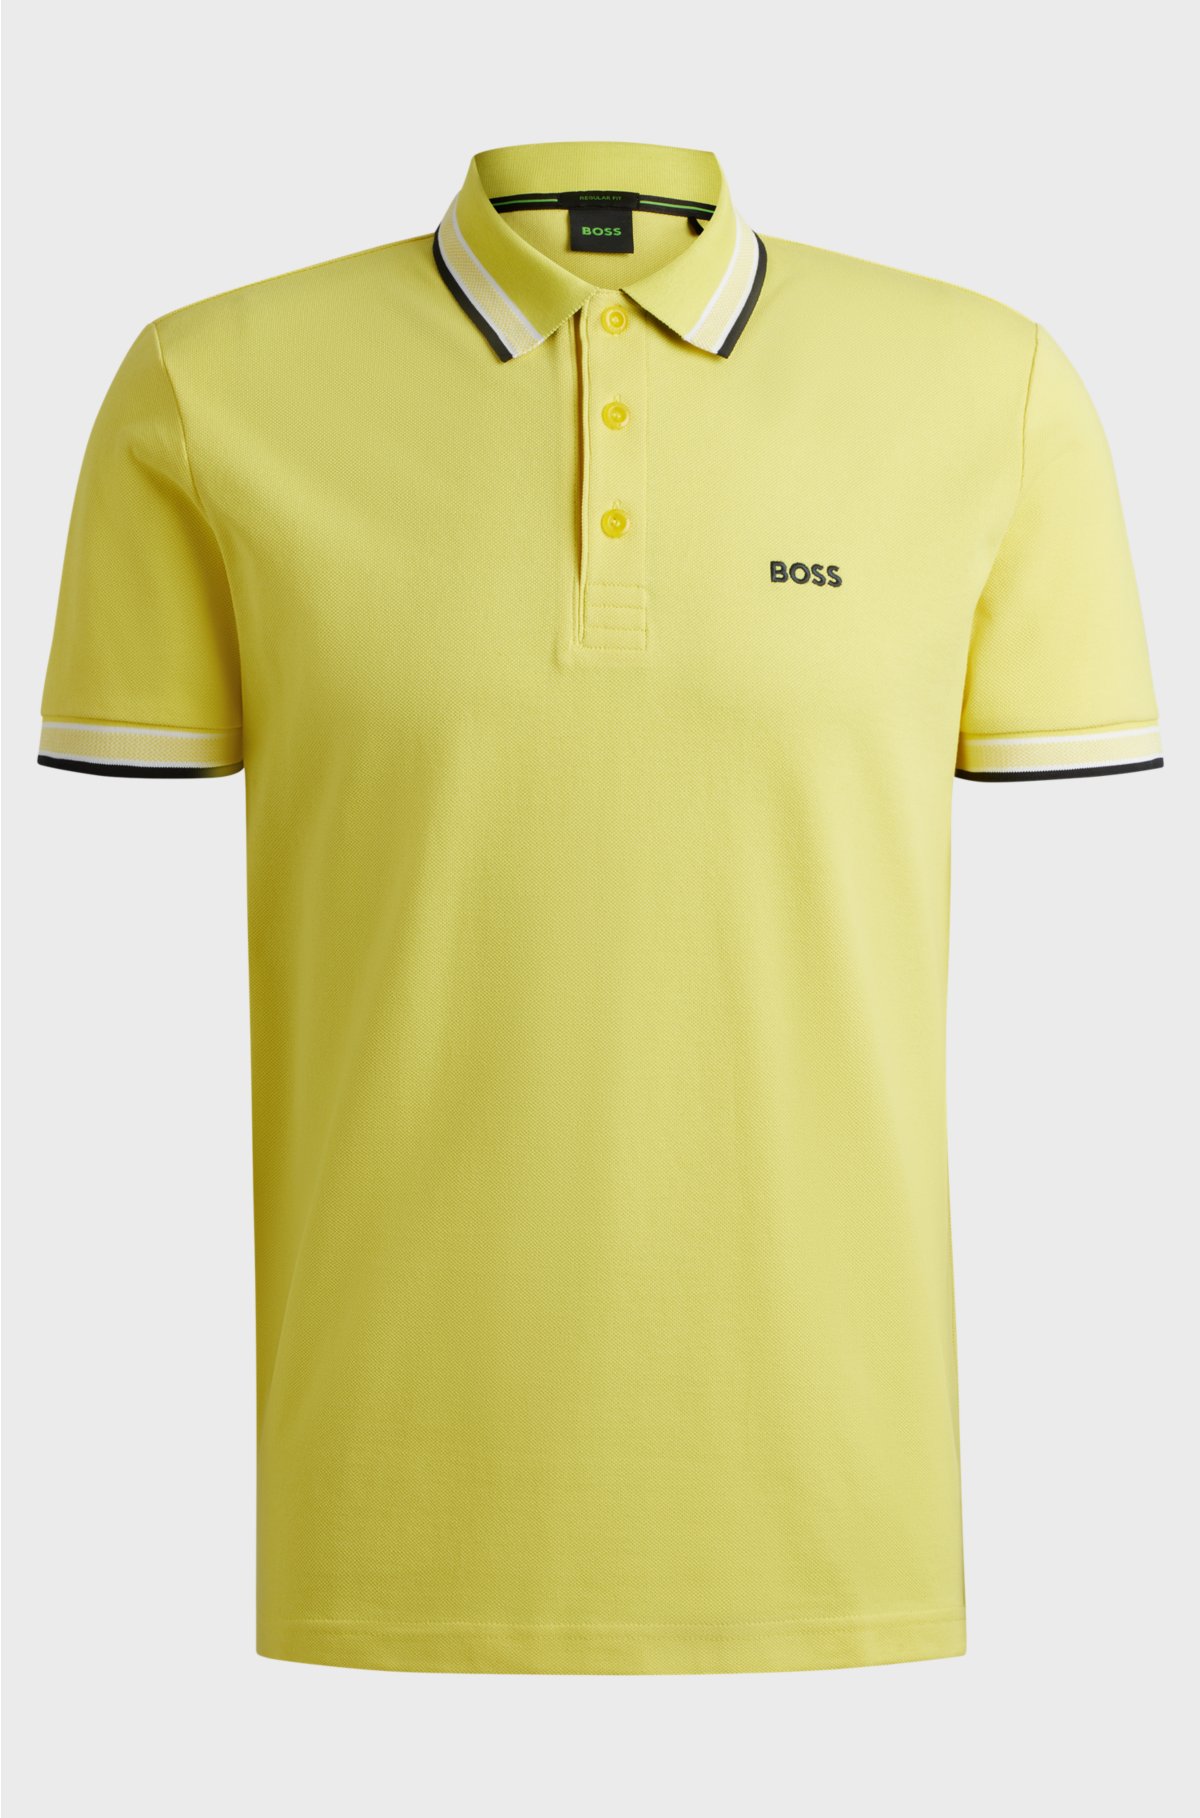 Cotton-piqué polo shirt with contrast logo, Yellow